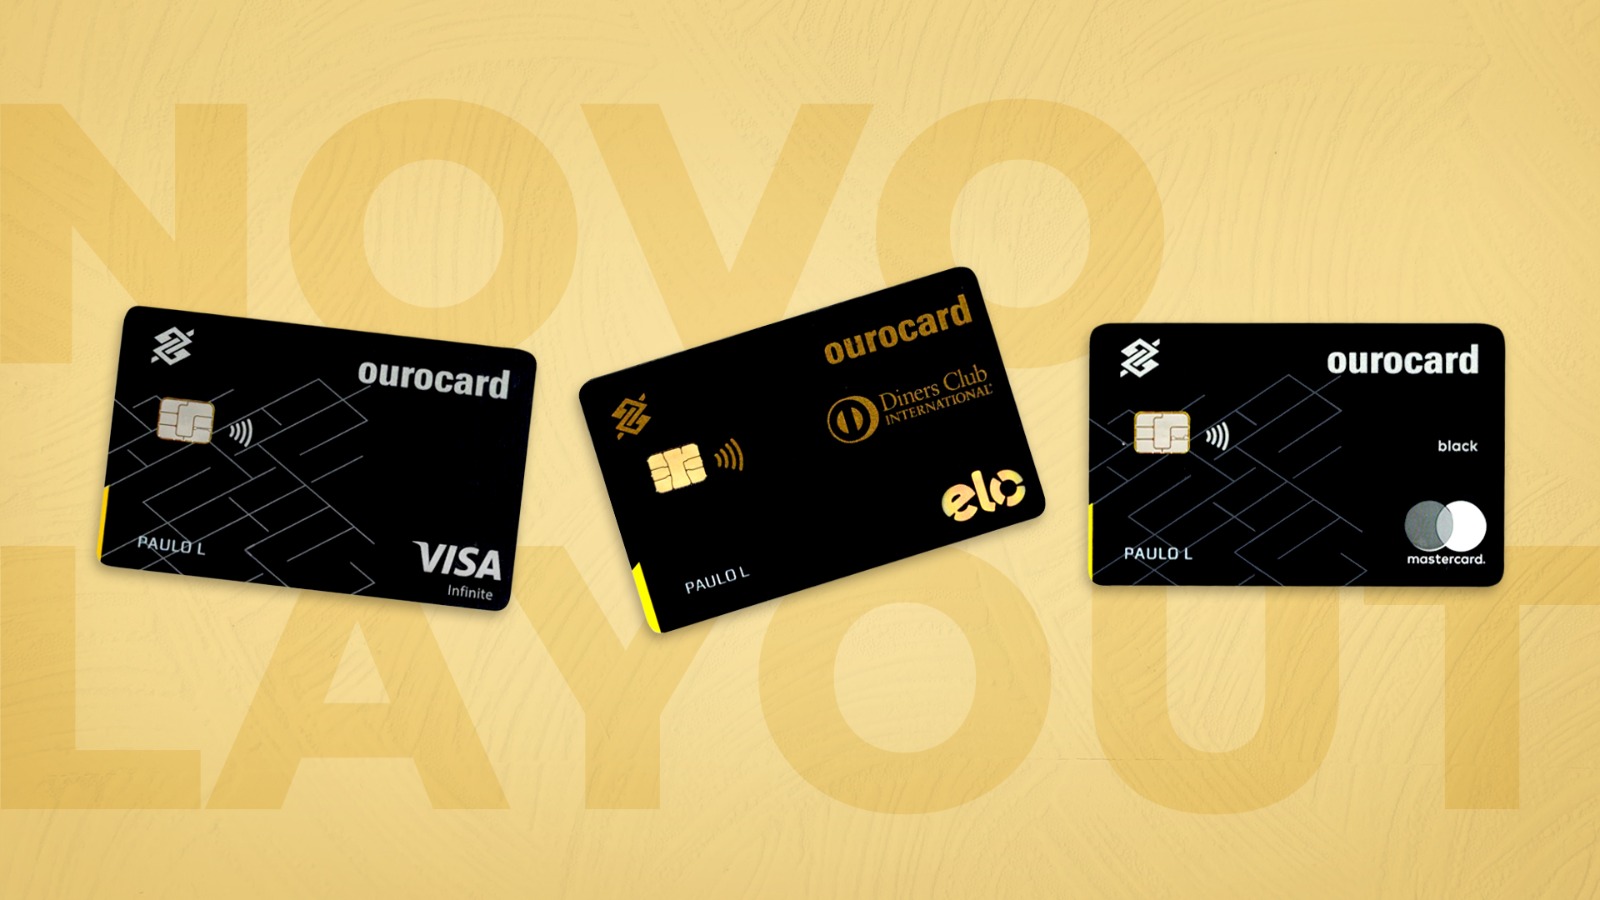 Cartão Banco do Brasil Ourocard Visa Gold - Análise - Pontos pra Voar